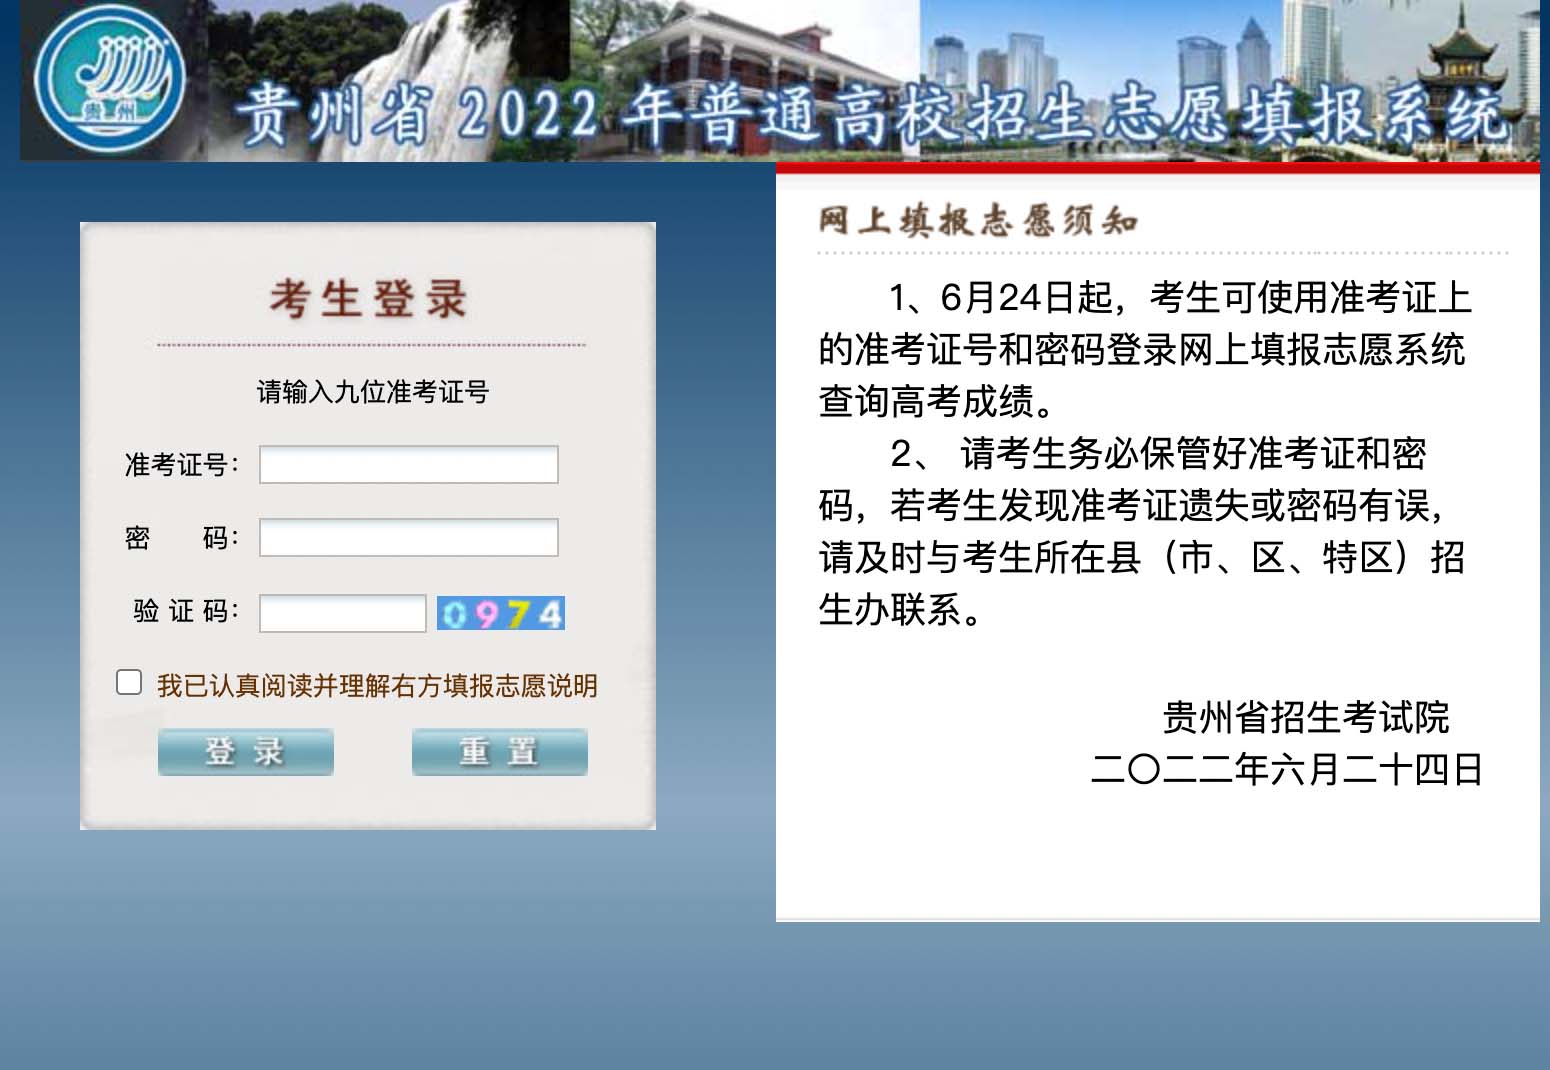 2022年贵州高考志愿填报入口http//gkzy.eaagz.org.cn